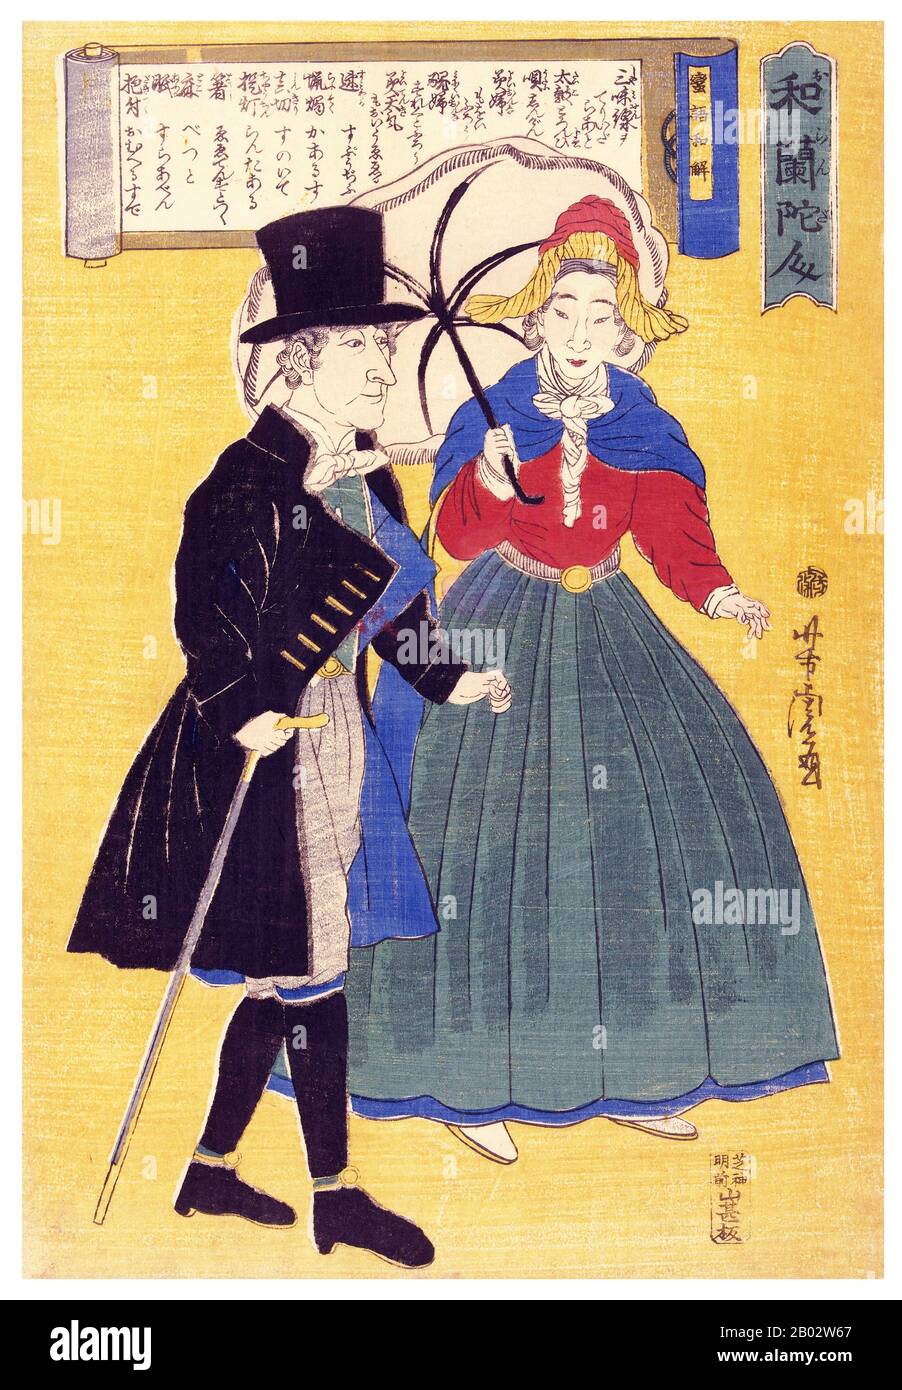 Utagawa Yoshitora était un concepteur de gravures japonaises sur bois ukiyo-e et un illustrateur de livres et de journaux qui était actif d'environ 1850 à environ 1880. Il est né à Edo (Tokyo moderne), mais ni sa date de naissance ni sa date de mort ne sont connues. Il était un élève important d'Utagawa Kuniyoshi qui a excellé dans des reproductions de guerriers, d'acteurs kabuki, de belles femmes et d'étrangers (Yokohama-e). Banque D'Images